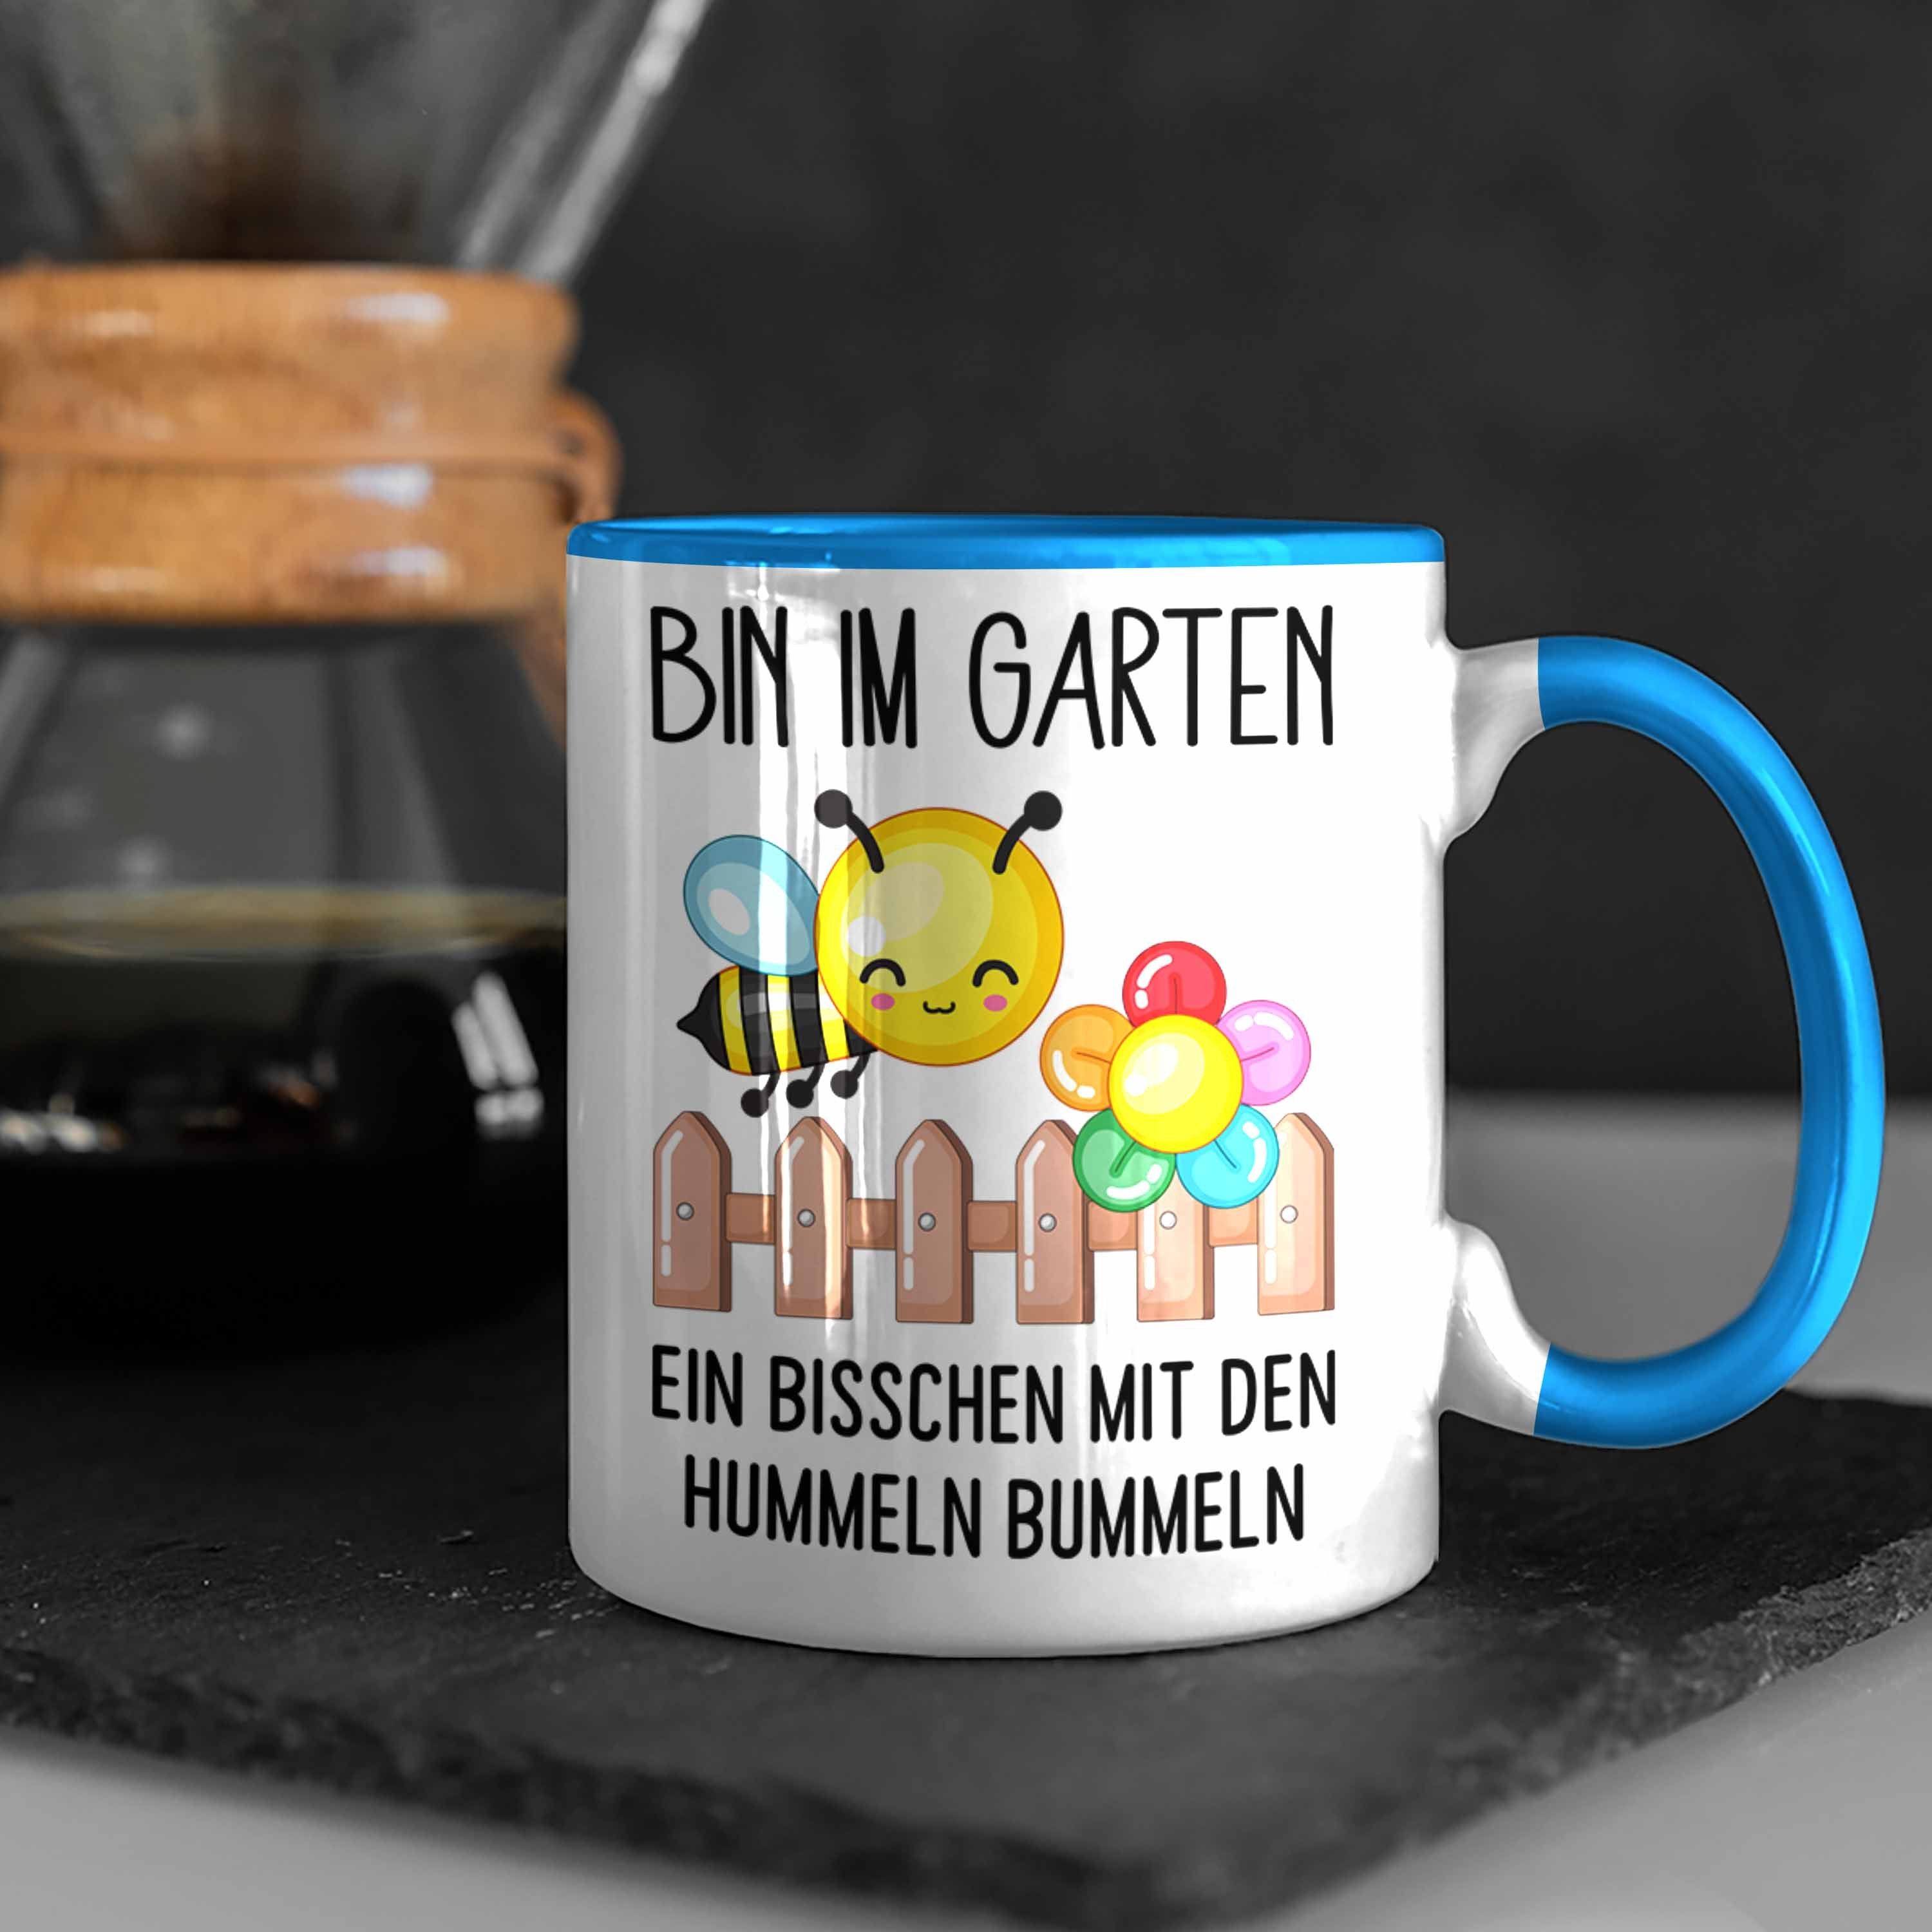 Den Bin Blau Gesche Im Bummeln Hummeln Garten Trendation Mit Tasse Tasse